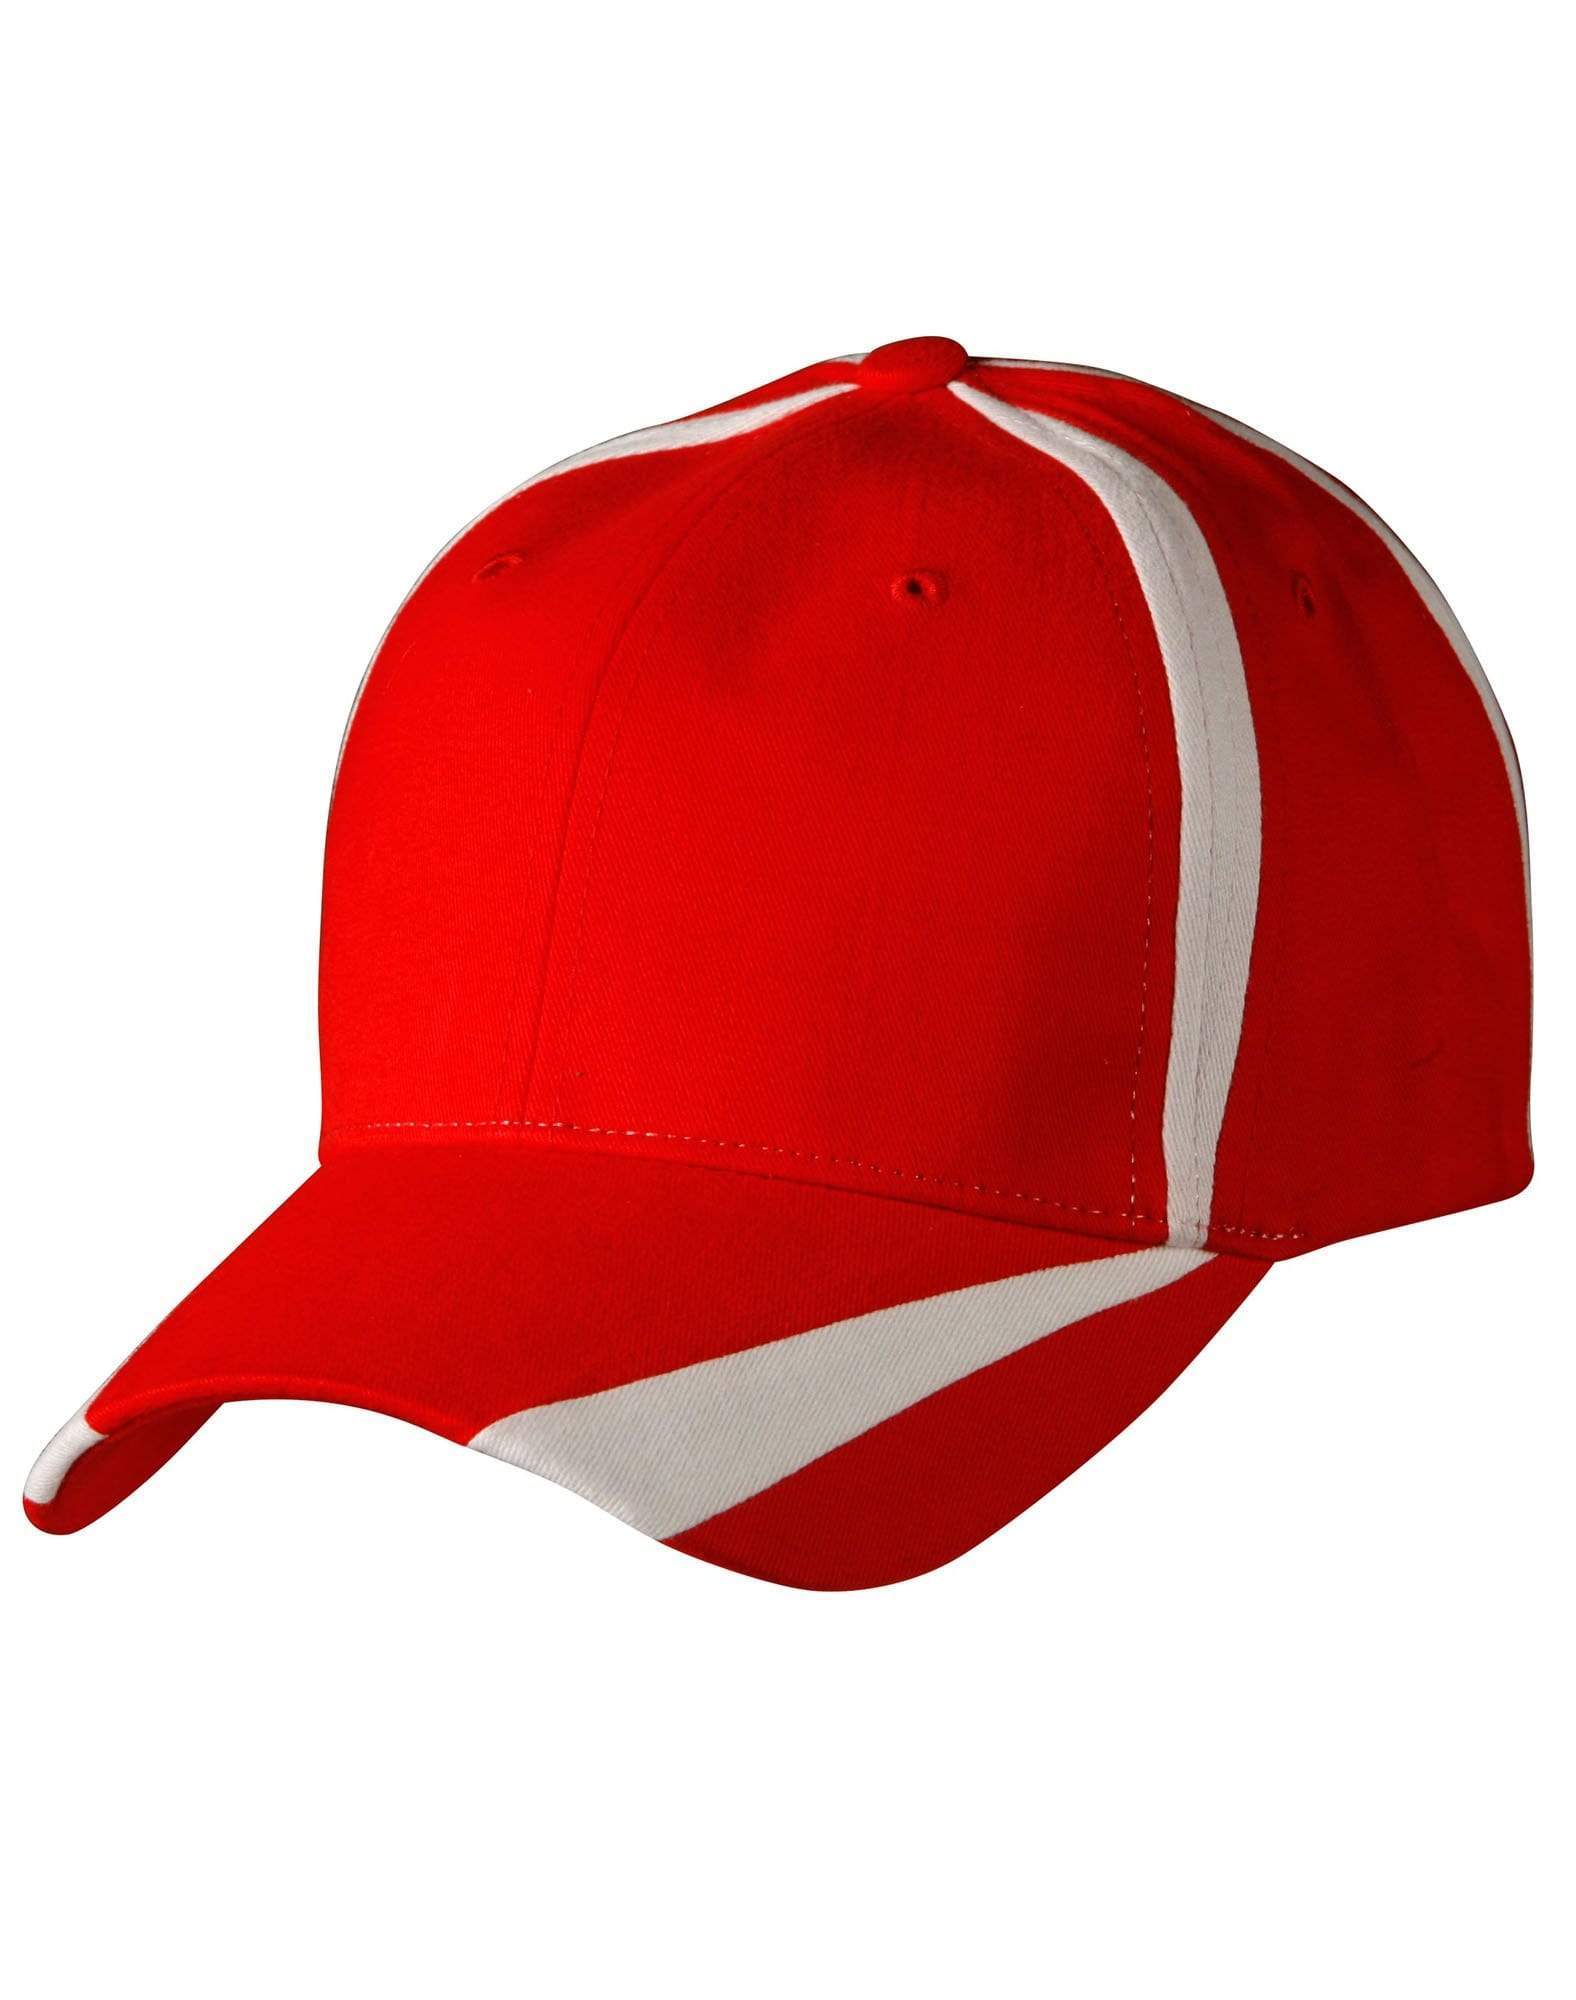 Winning Spirit Active Wear Red/White / One size Peak & Crown Contrast Cap Ch81